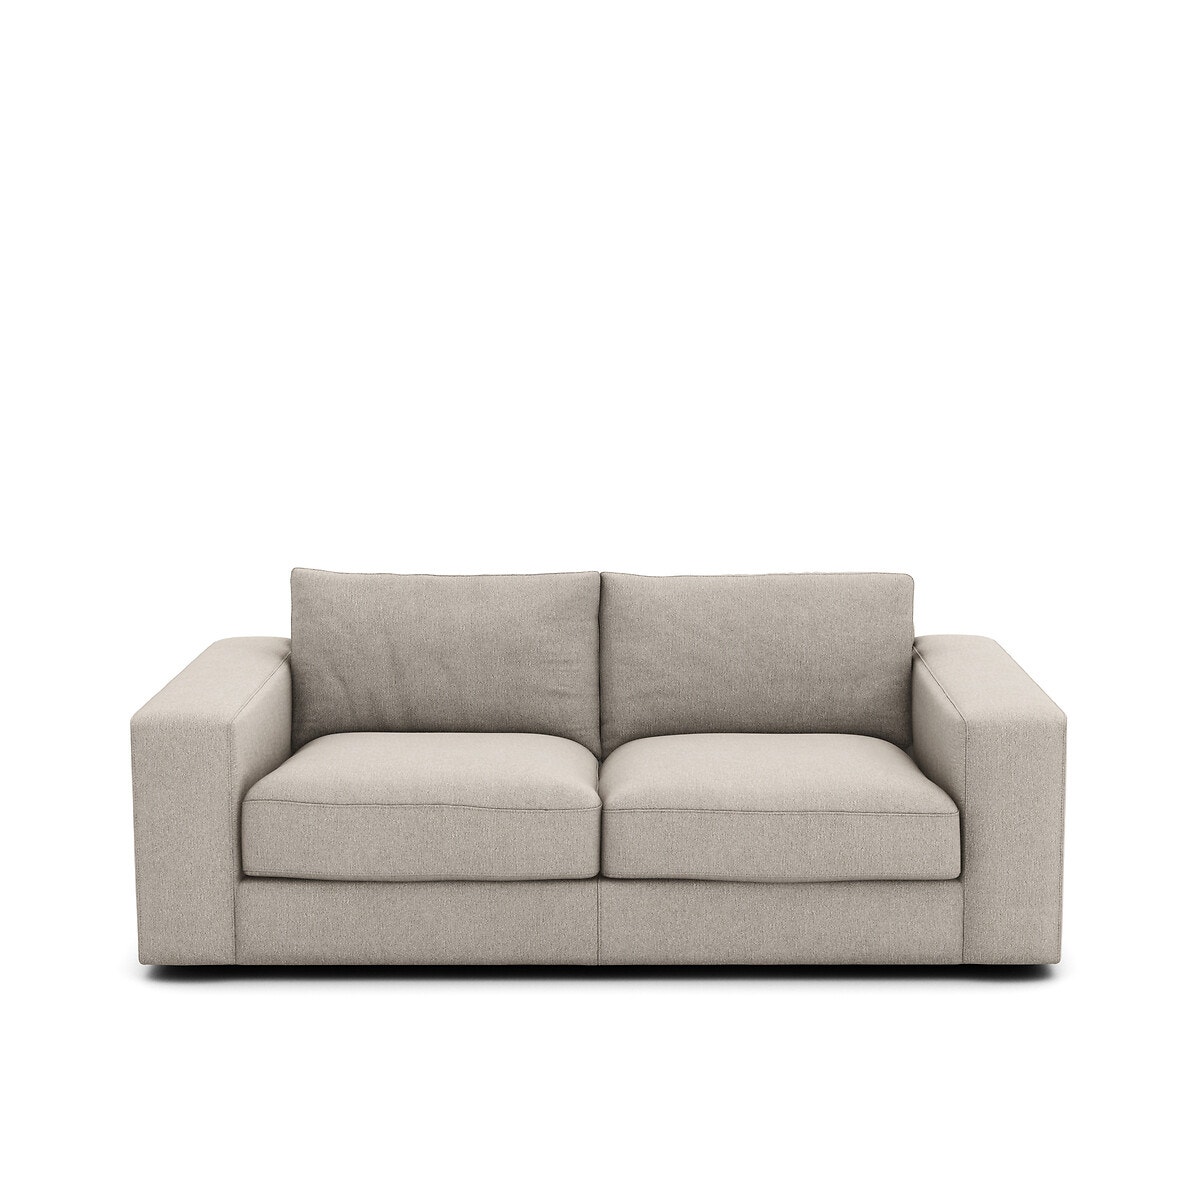 Τριθέσιος καναπές με ανάγλυφη ταπετσαρία από βισκόζη λινό, Skander